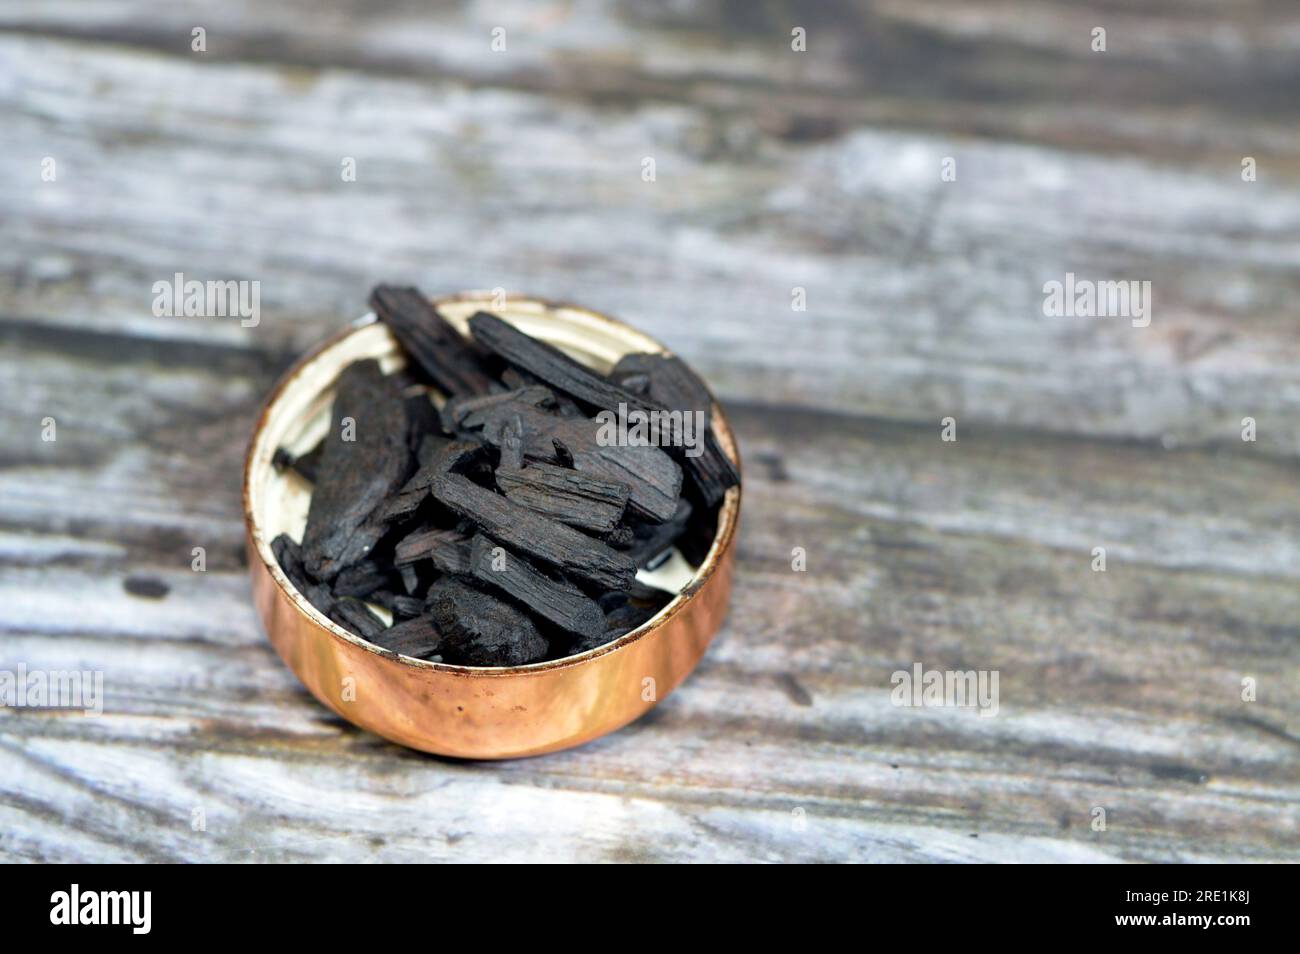 L'encens saoudien Oud, un matériau biotique aromatique qui libère de la fumée parfumée lorsqu'il est brûlé. Le terme est utilisé pour désigner soit la matière, soit l'arôme, composer Banque D'Images